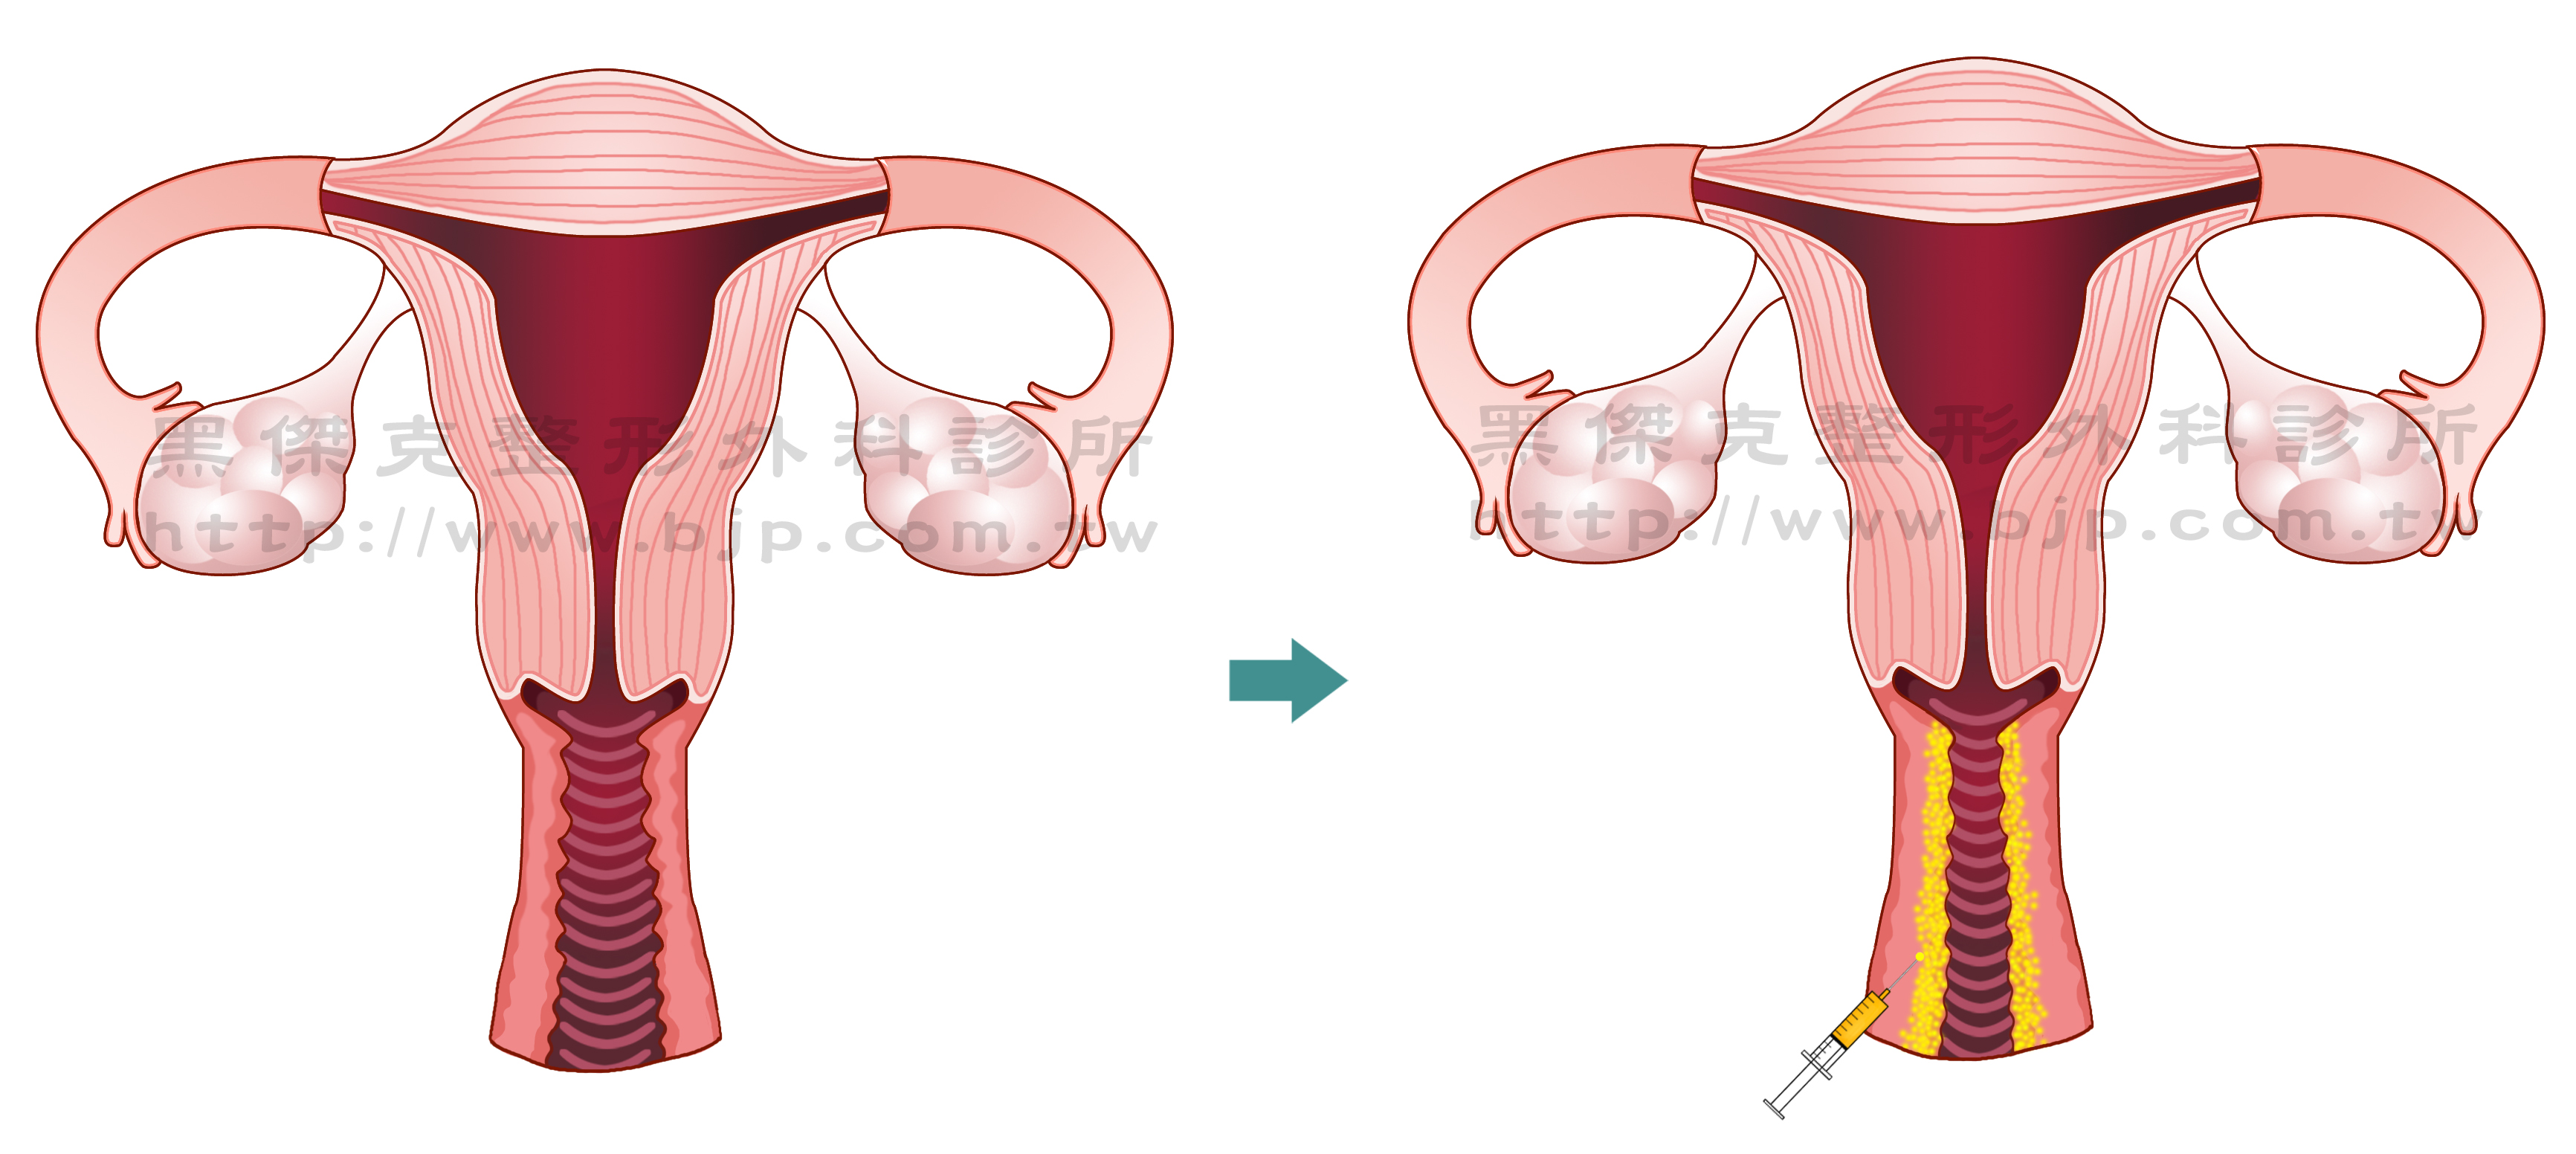 自體脂肪陰道緊實，原理是將自體脂肪平均注射到陰道內壁周圍，藉此讓陰道壁增厚，間接達到陰道緊實度增加的感覺，術後觸感自然柔軟